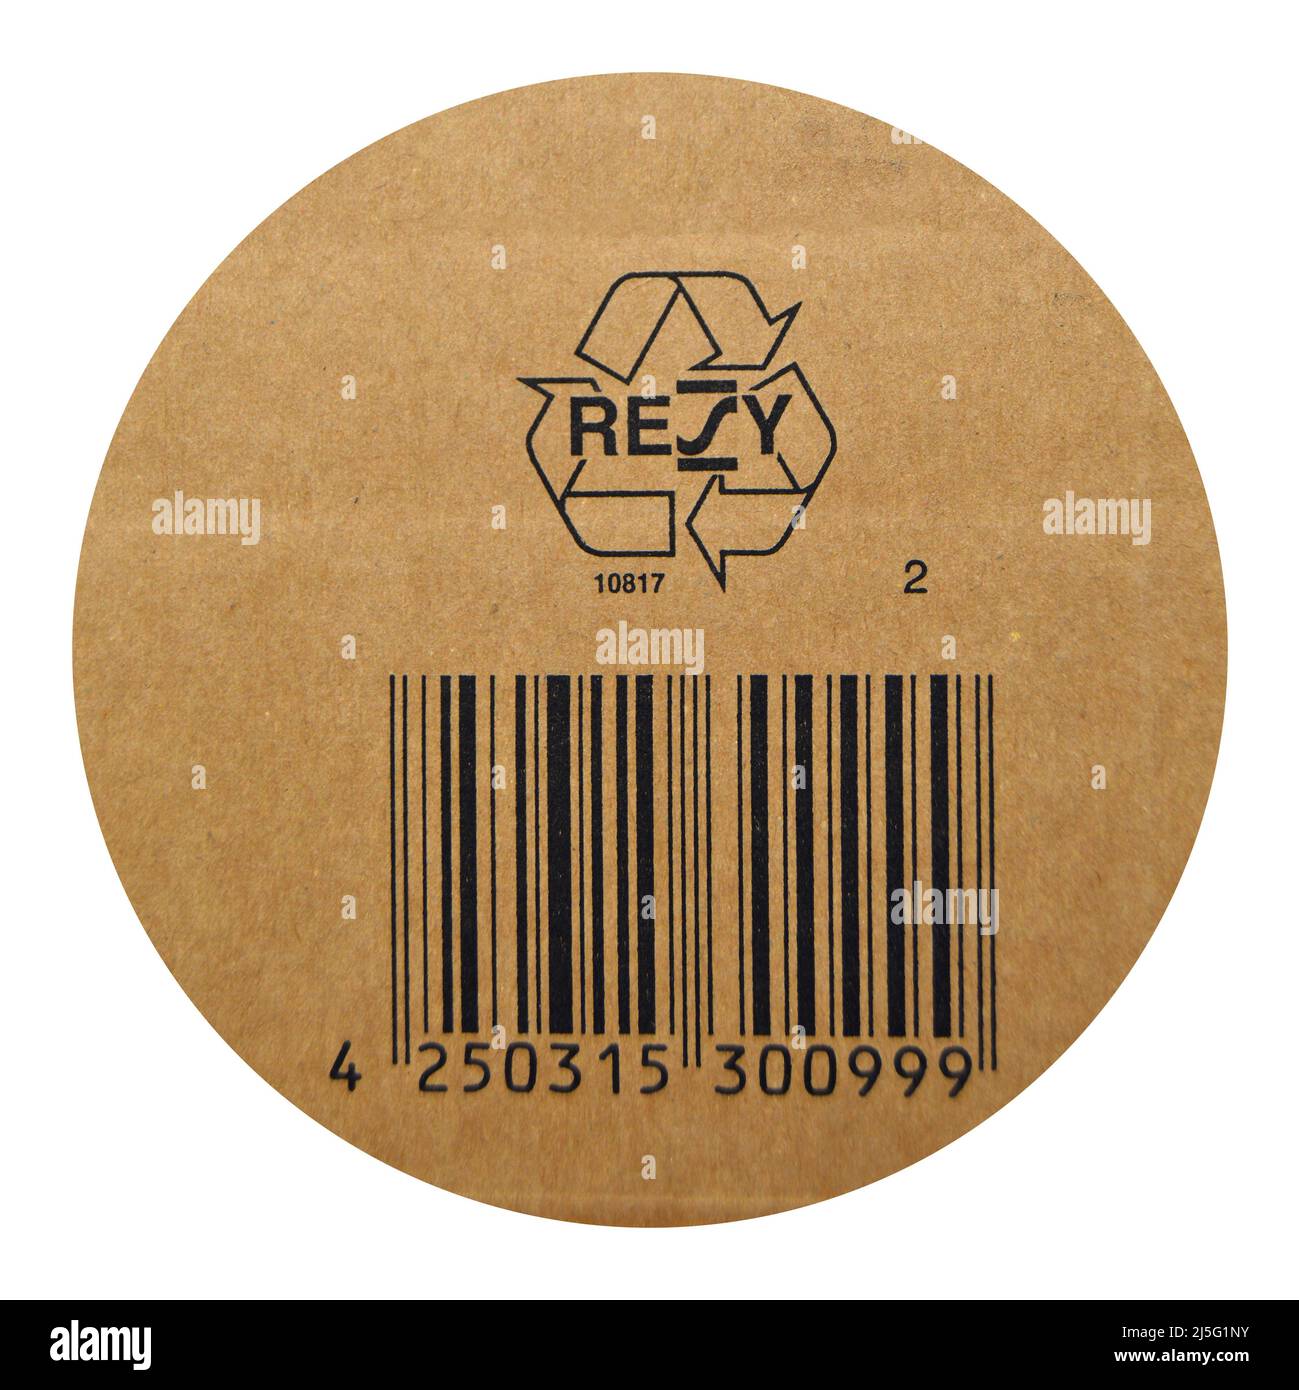 Papier carton marron et beige sur codes-barres symbole de recyclage imprimé. Peut être utilisé dans la correspondance de l'entreprise Banque D'Images